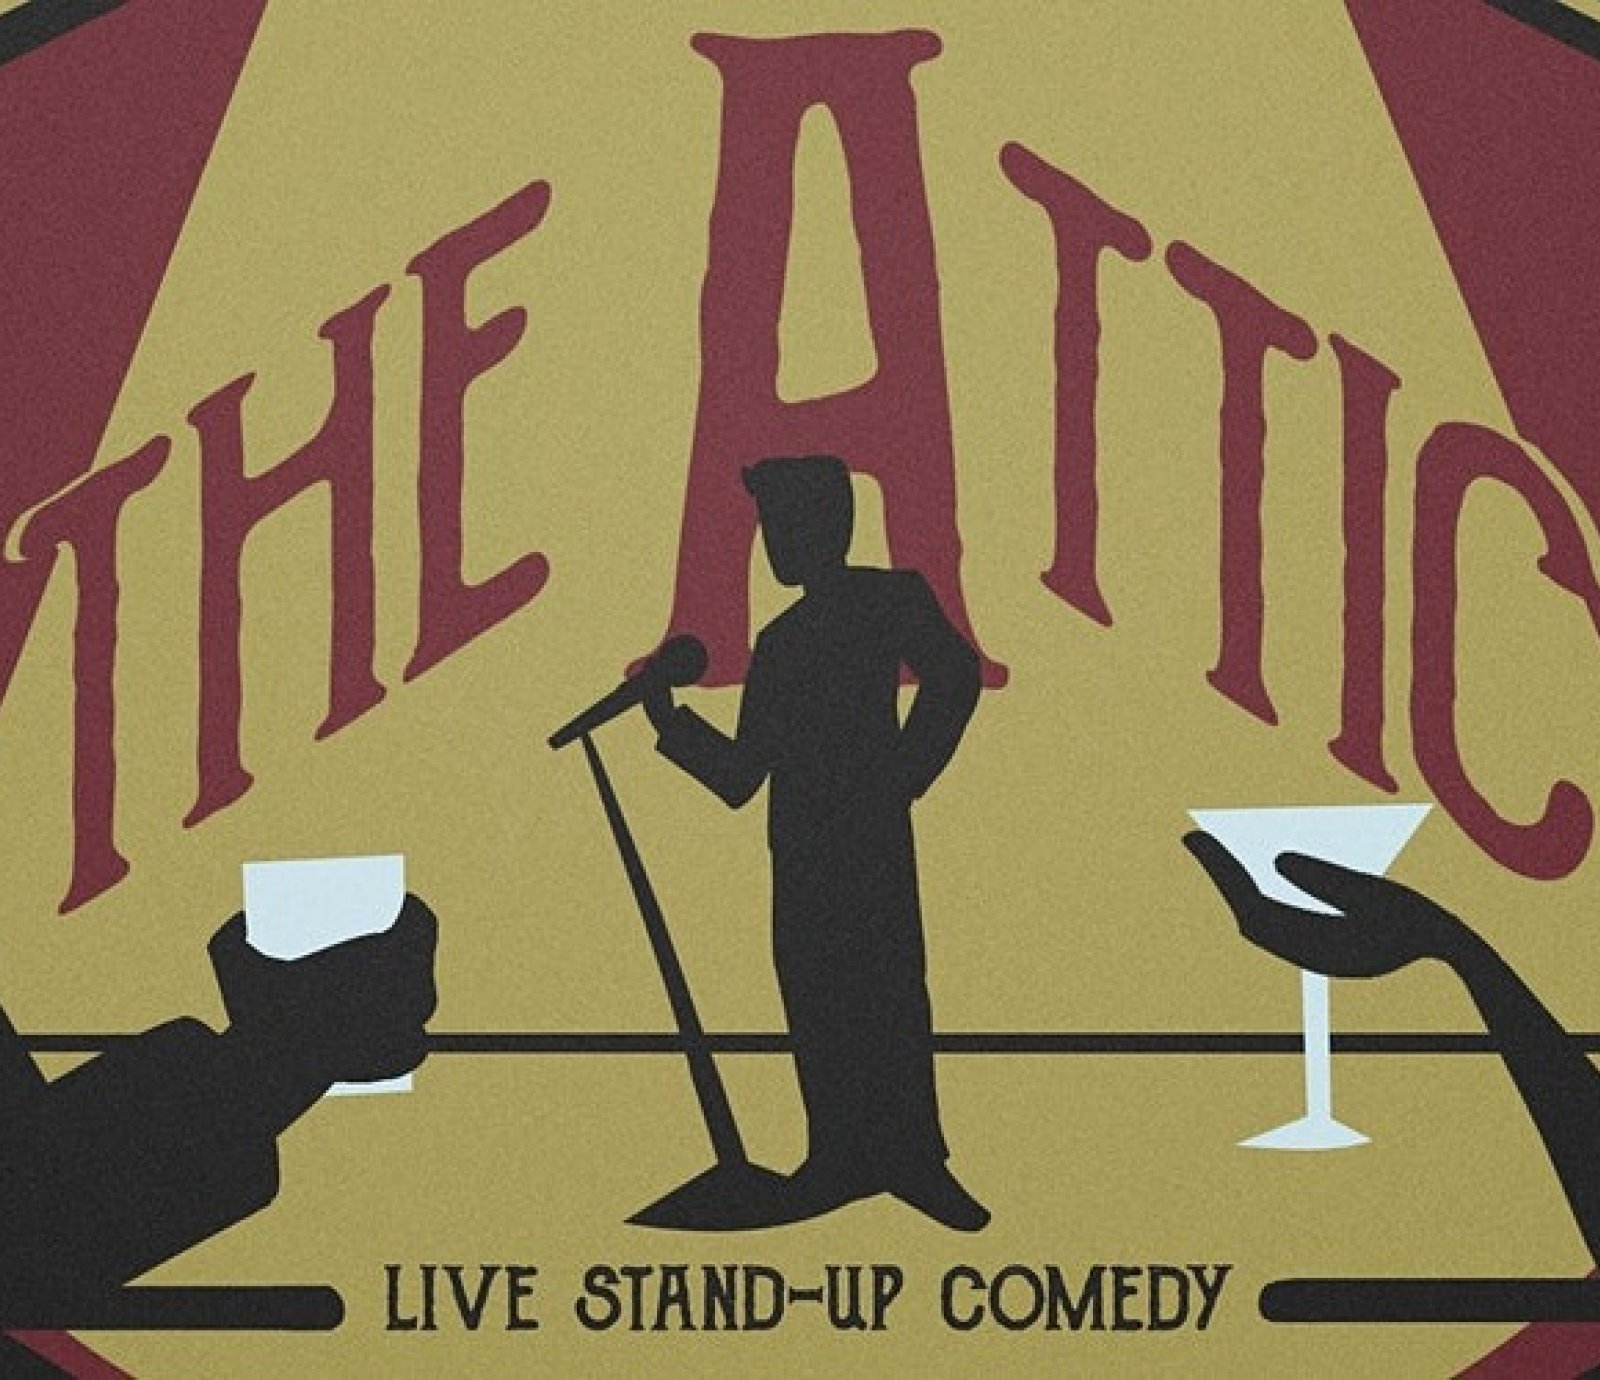 Live Comedy At the Attic